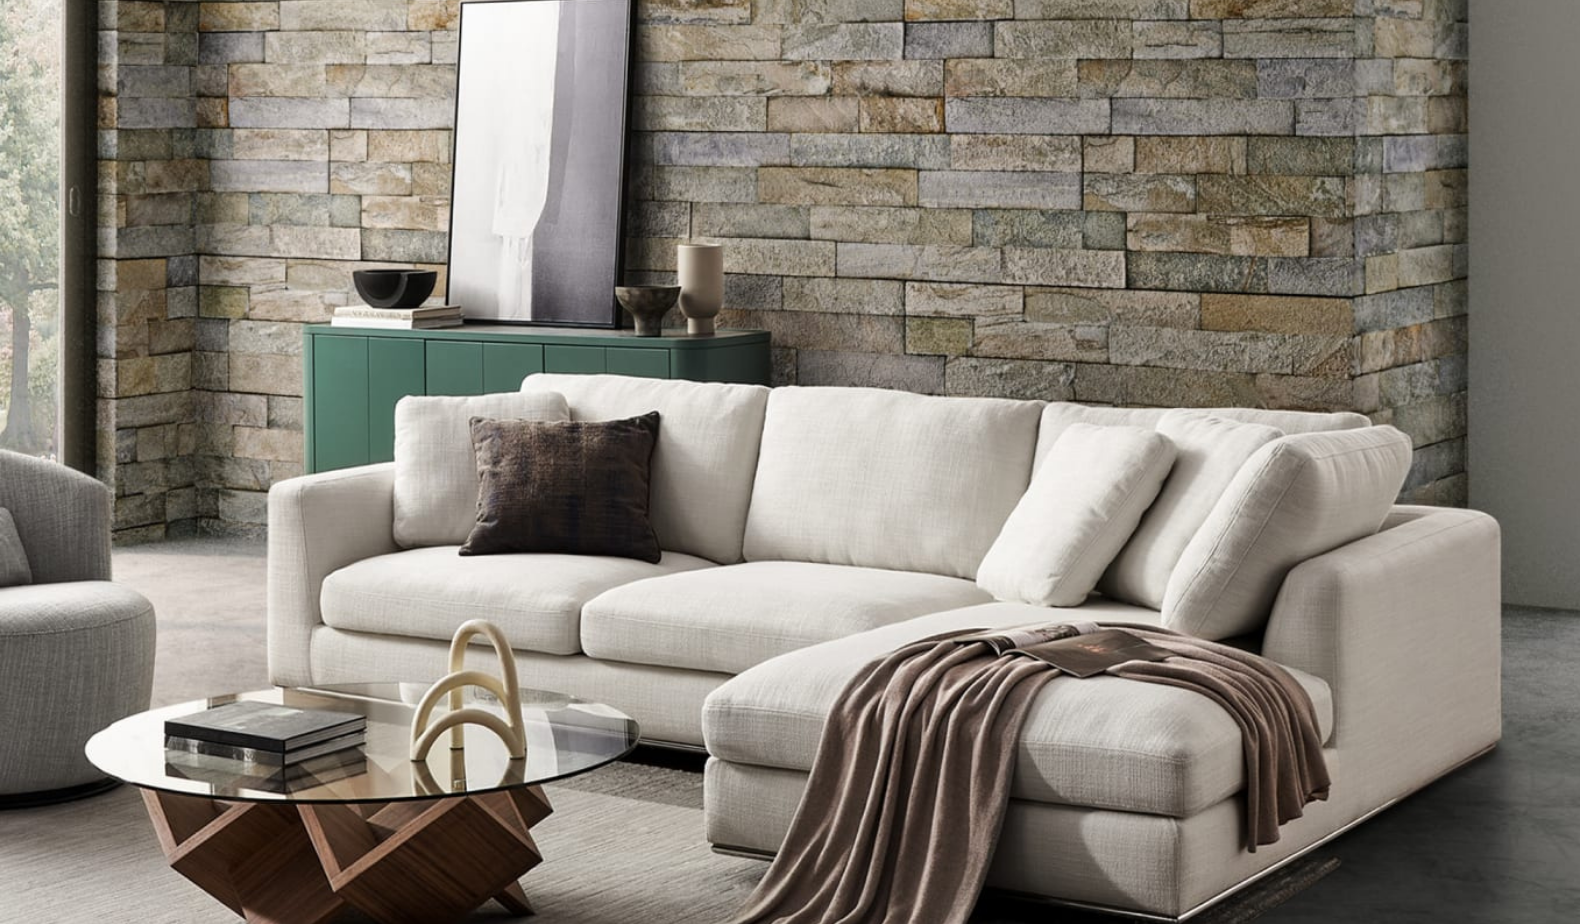 Custom Sofa - How to create - Lauren Keenan Home